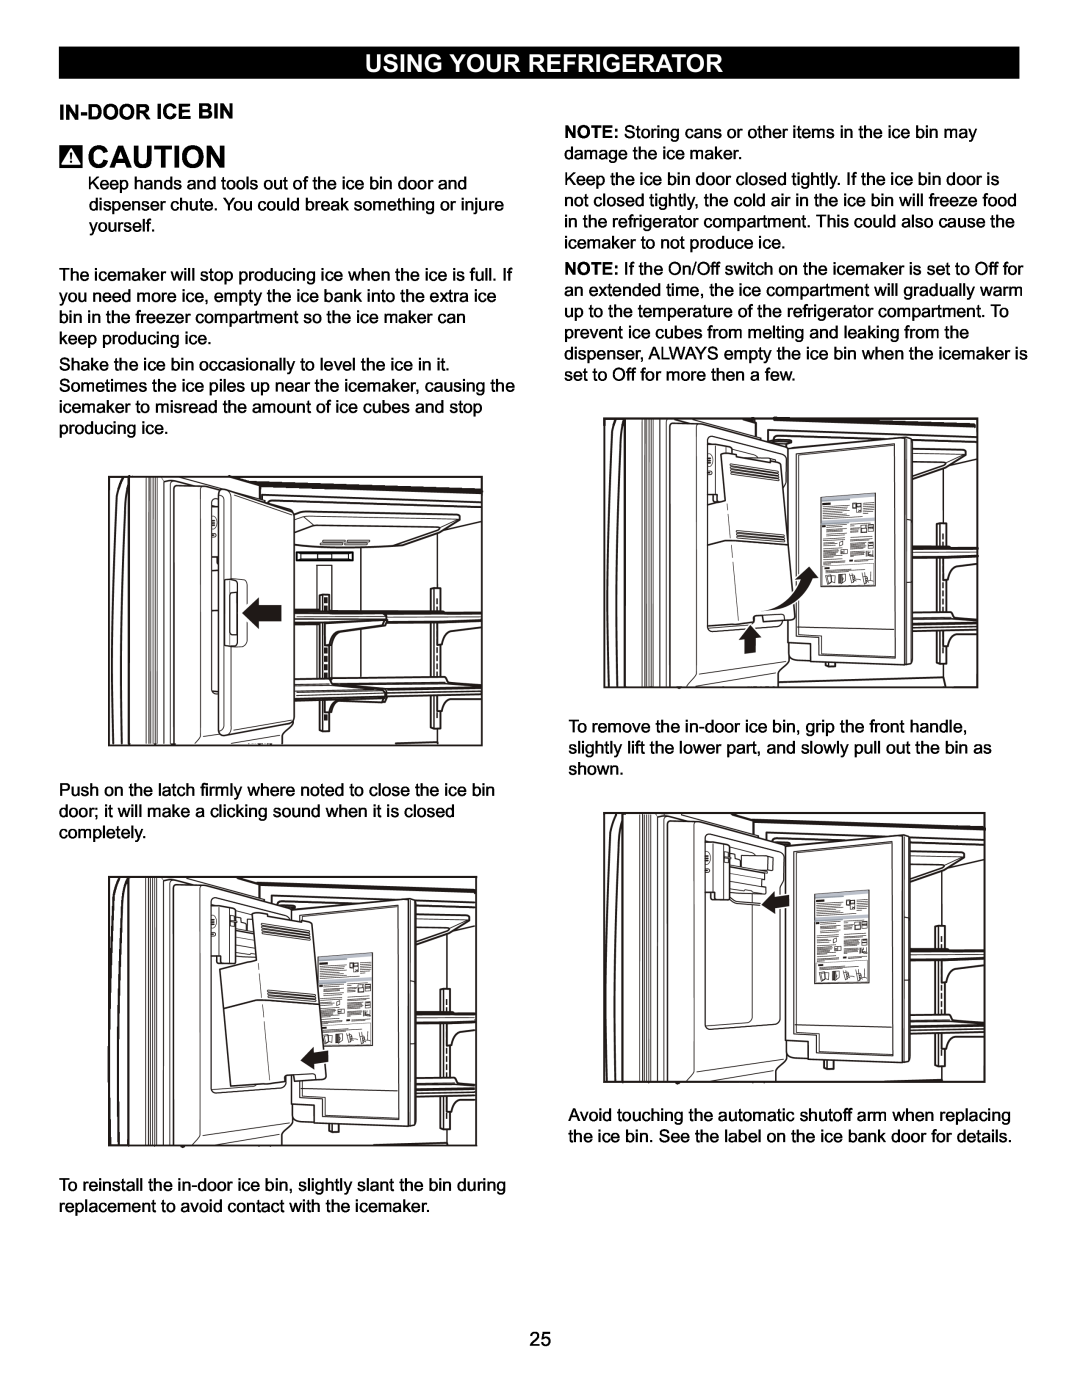 LG Electronics LFX23961SB, MFL47277003 owner manual In-Doorice Bin, Using Your Refrigerator 